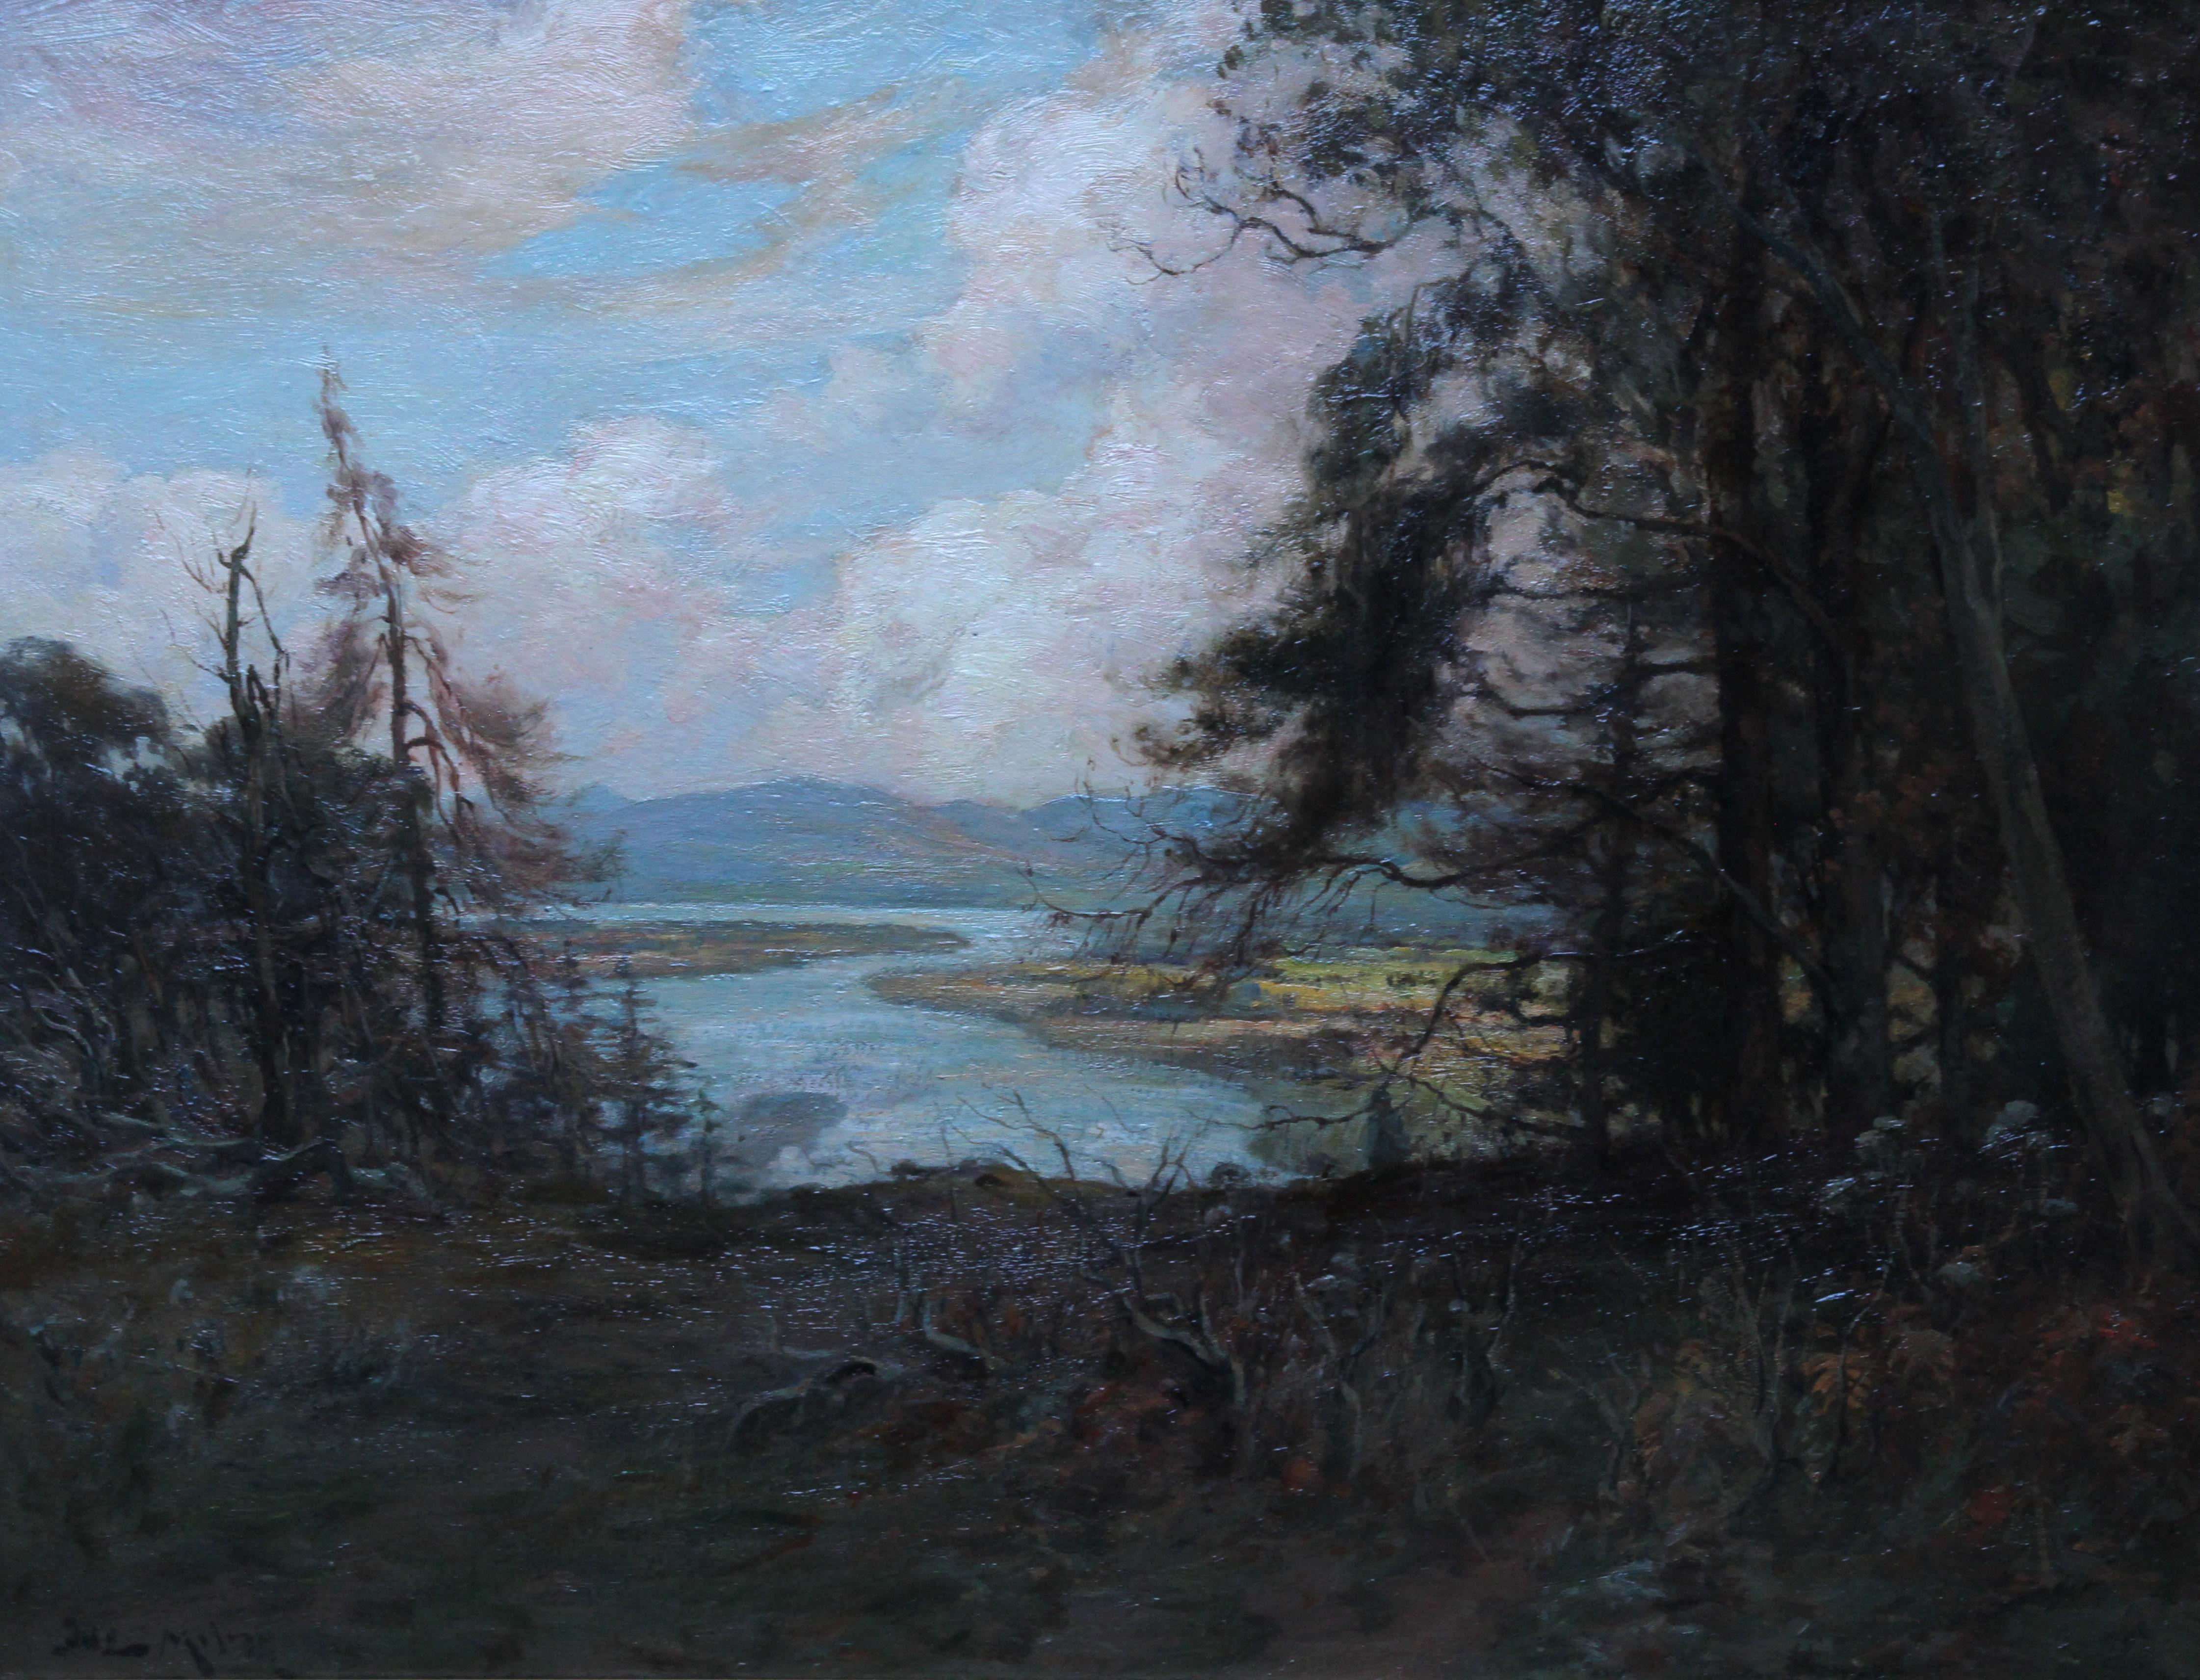 Fluss Tay Landschaft Schottland – schottische Kunst, viktorianisches impressionistisches Ölgemälde – Painting von Joseph Milne